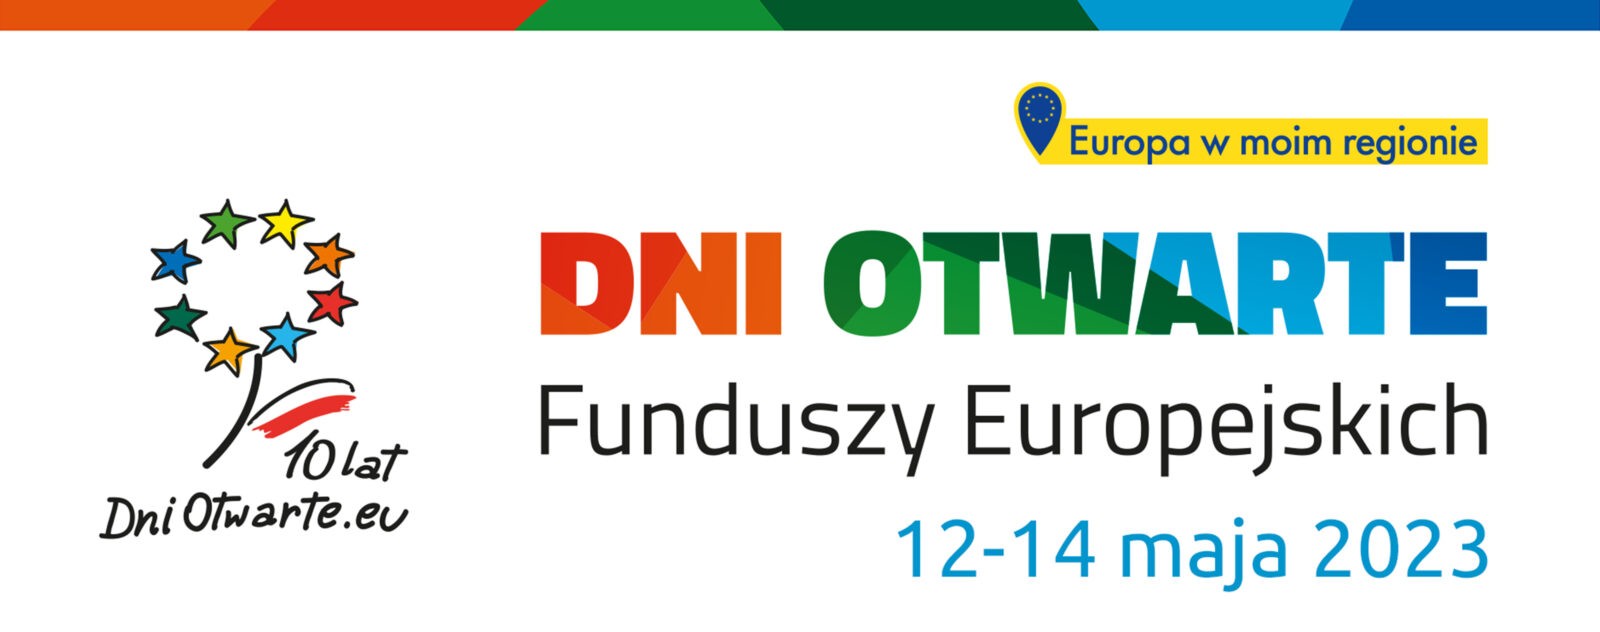 Na grafice znajduje się hasło: Dni Otwarte Funduszy Europejskich 12-14 maja 2023 r. W tle symbol kwiatka z flagą Polski w kształcie listka i hasłem: 10 lat DniOtwarte.eu